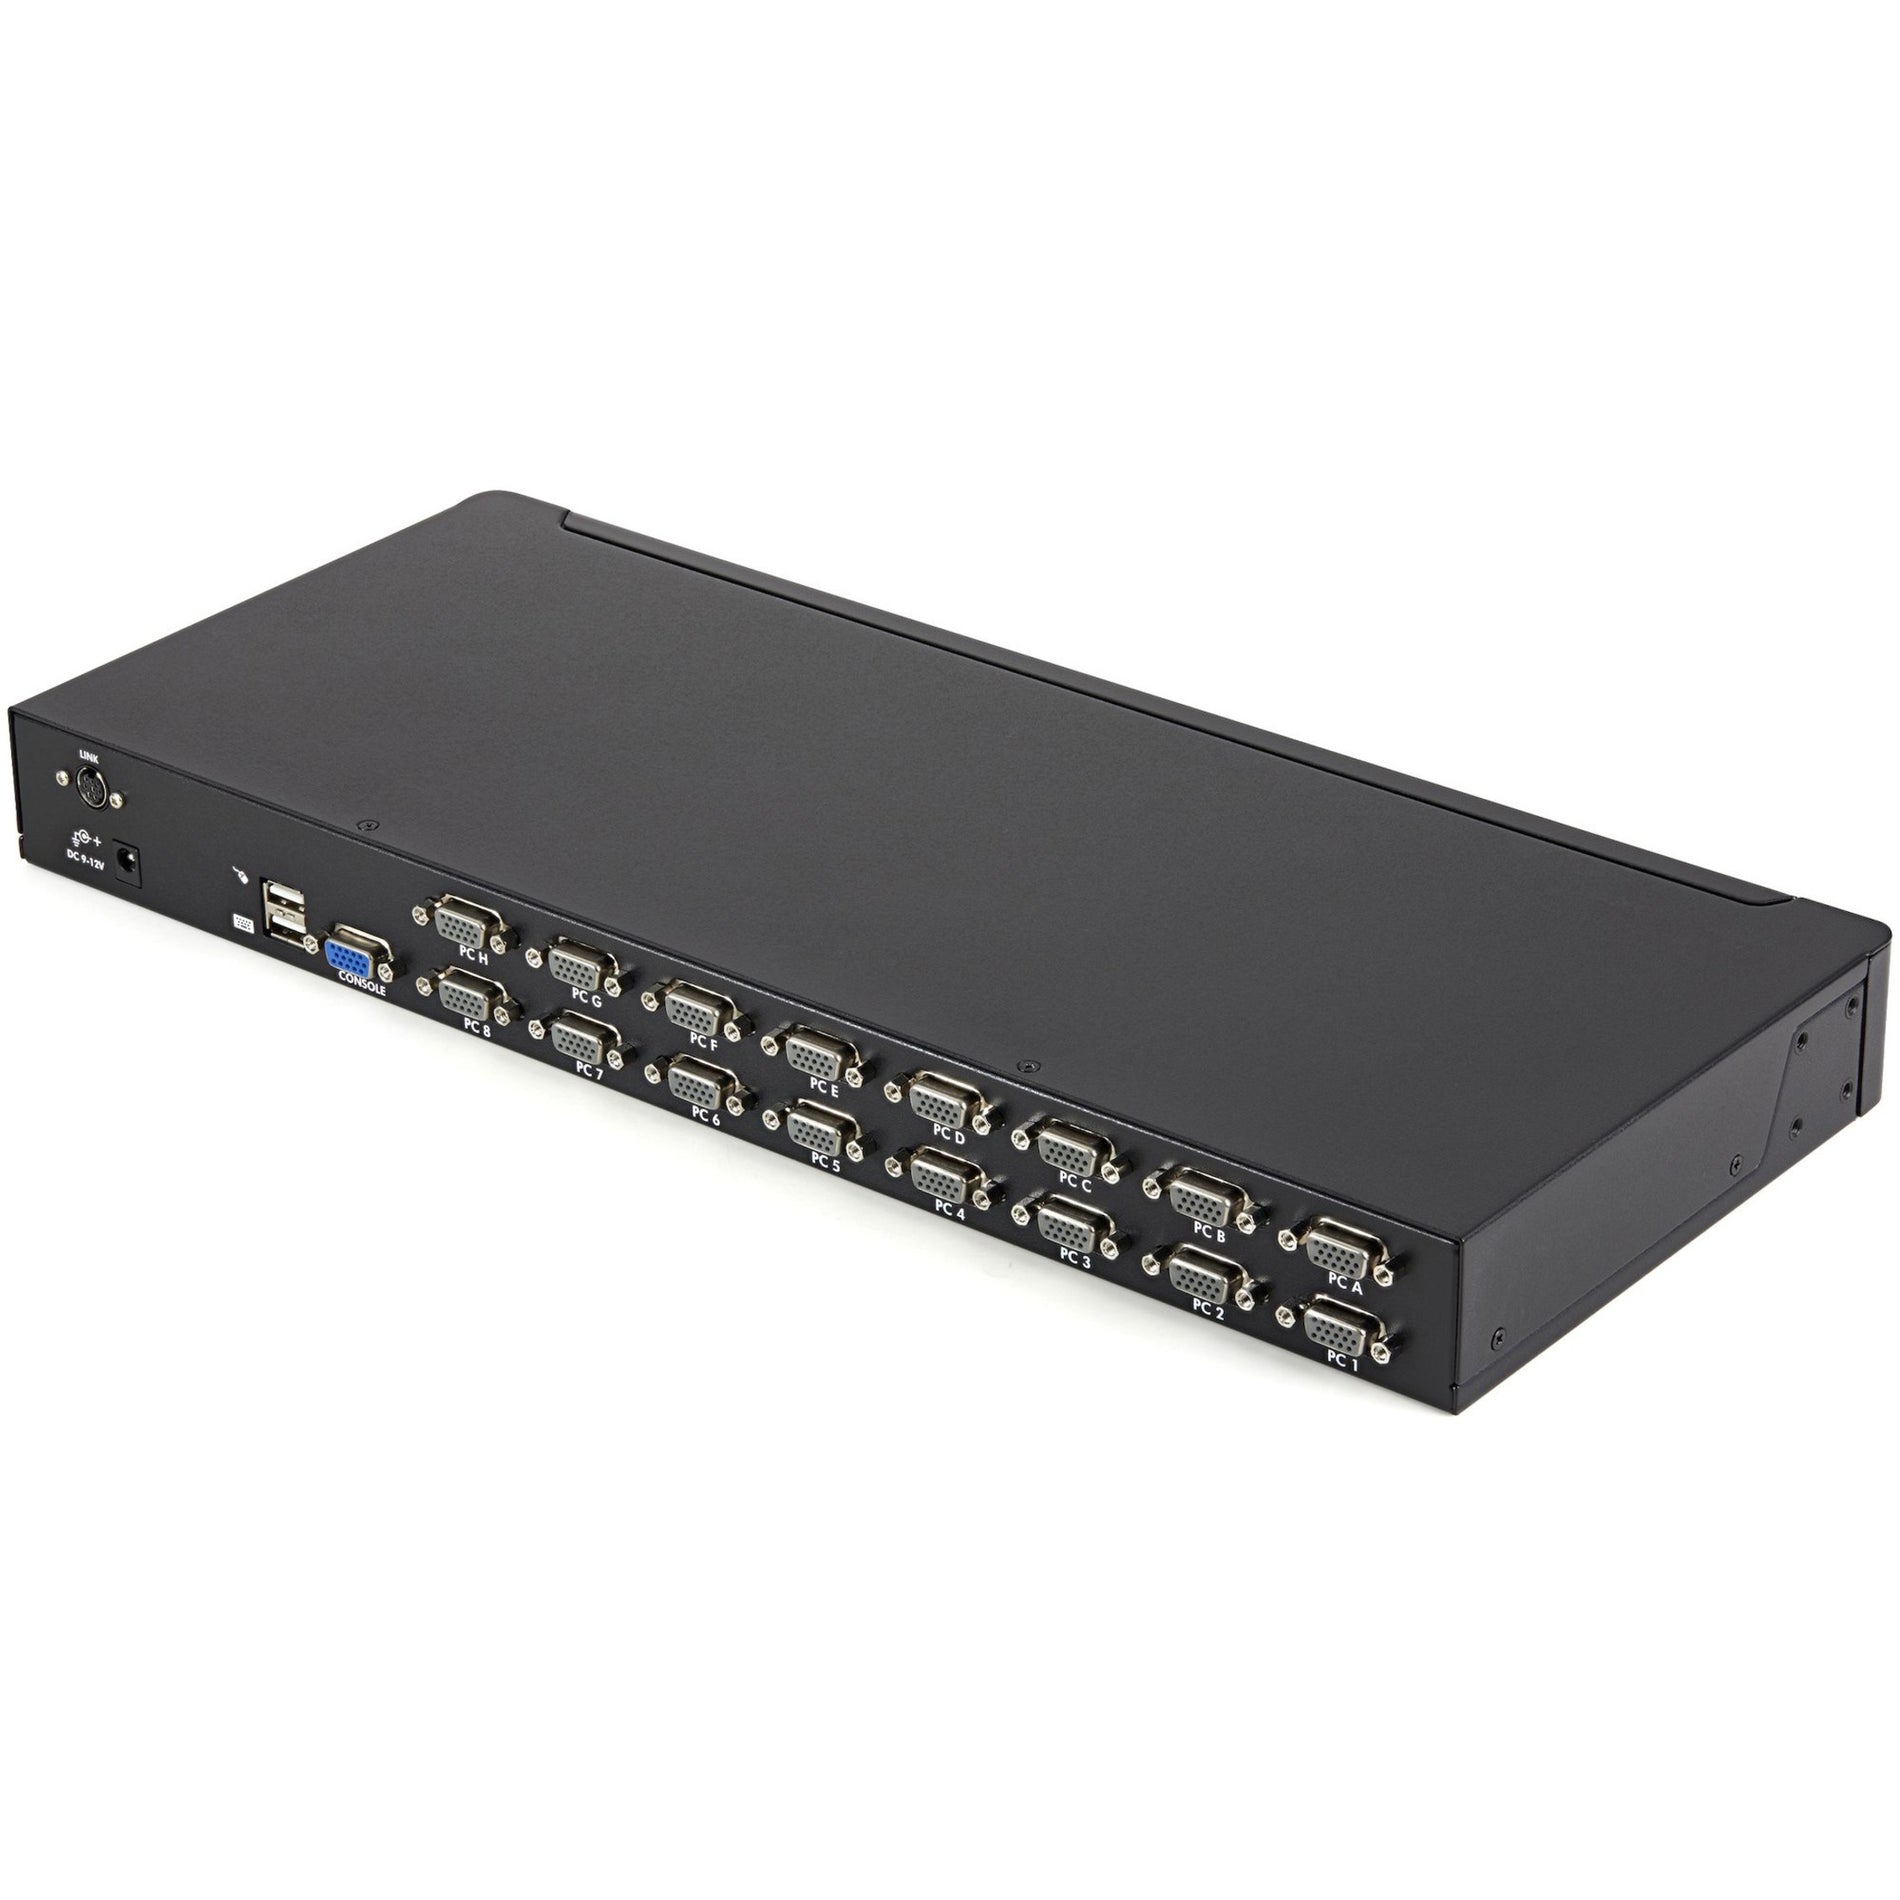 スタートレック・ドットコム SV1631DUSBUK 16 ポート 1U ラックマウント USB KVM スイッチキット w/ OSD & ケーブル 1920 x 1440 解像度 3 年 保証